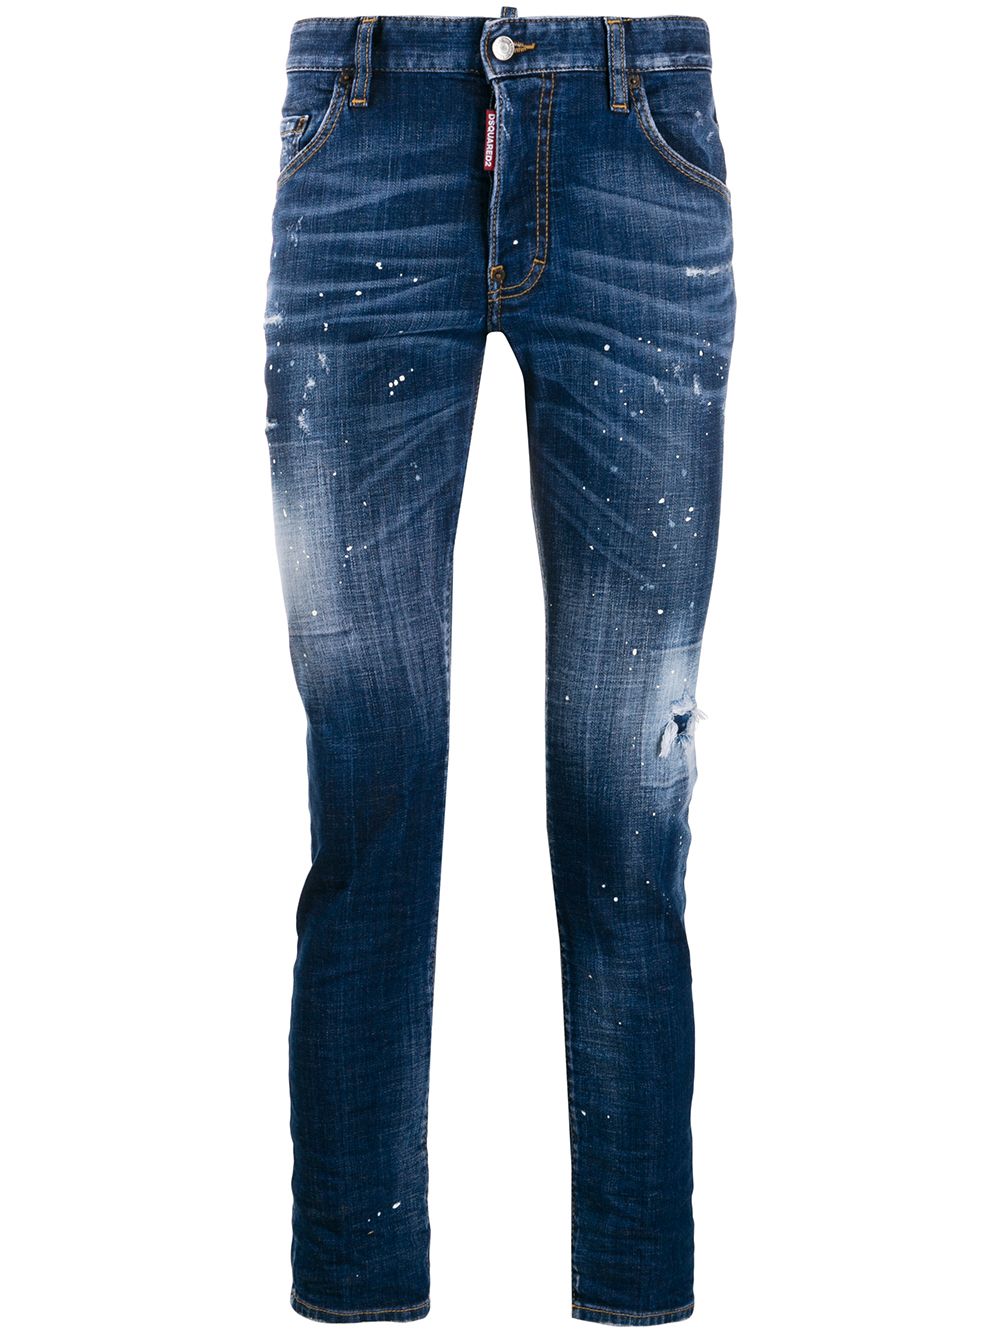 фото Dsquared2 джинсы скинни с эффектом разбрызганной краски